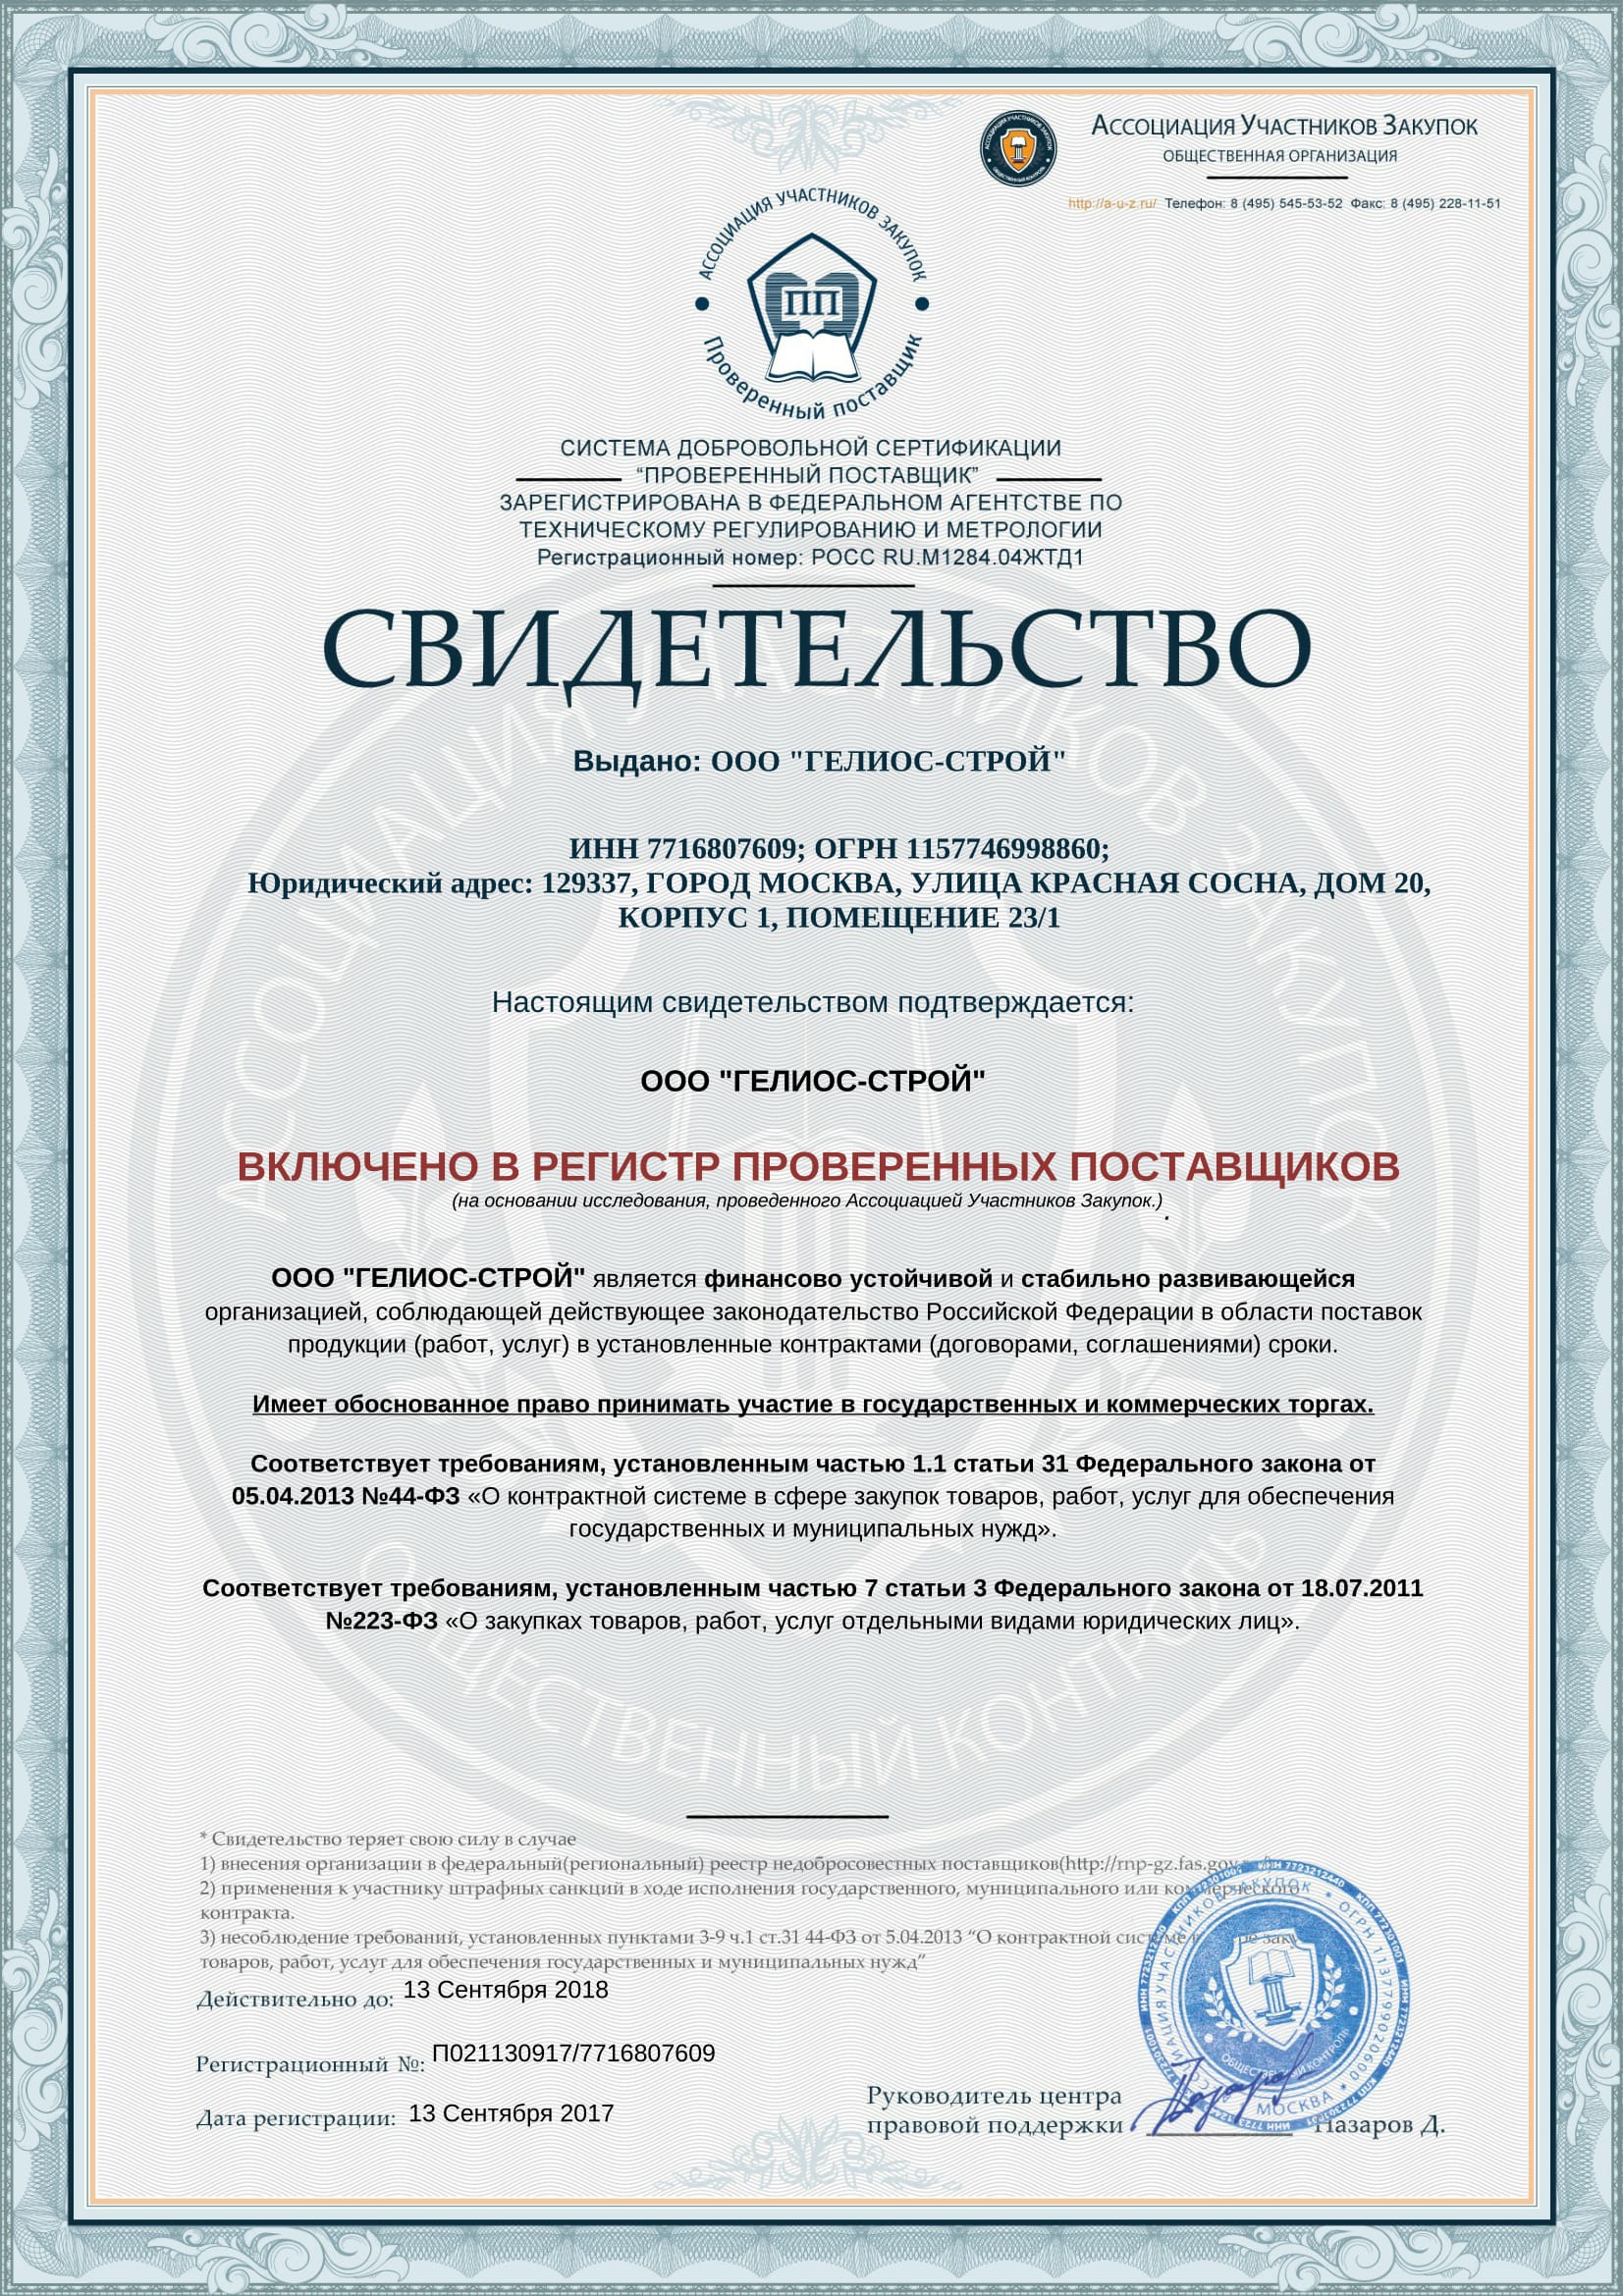 Сертификат о включении в регистр проверенных поставщиков